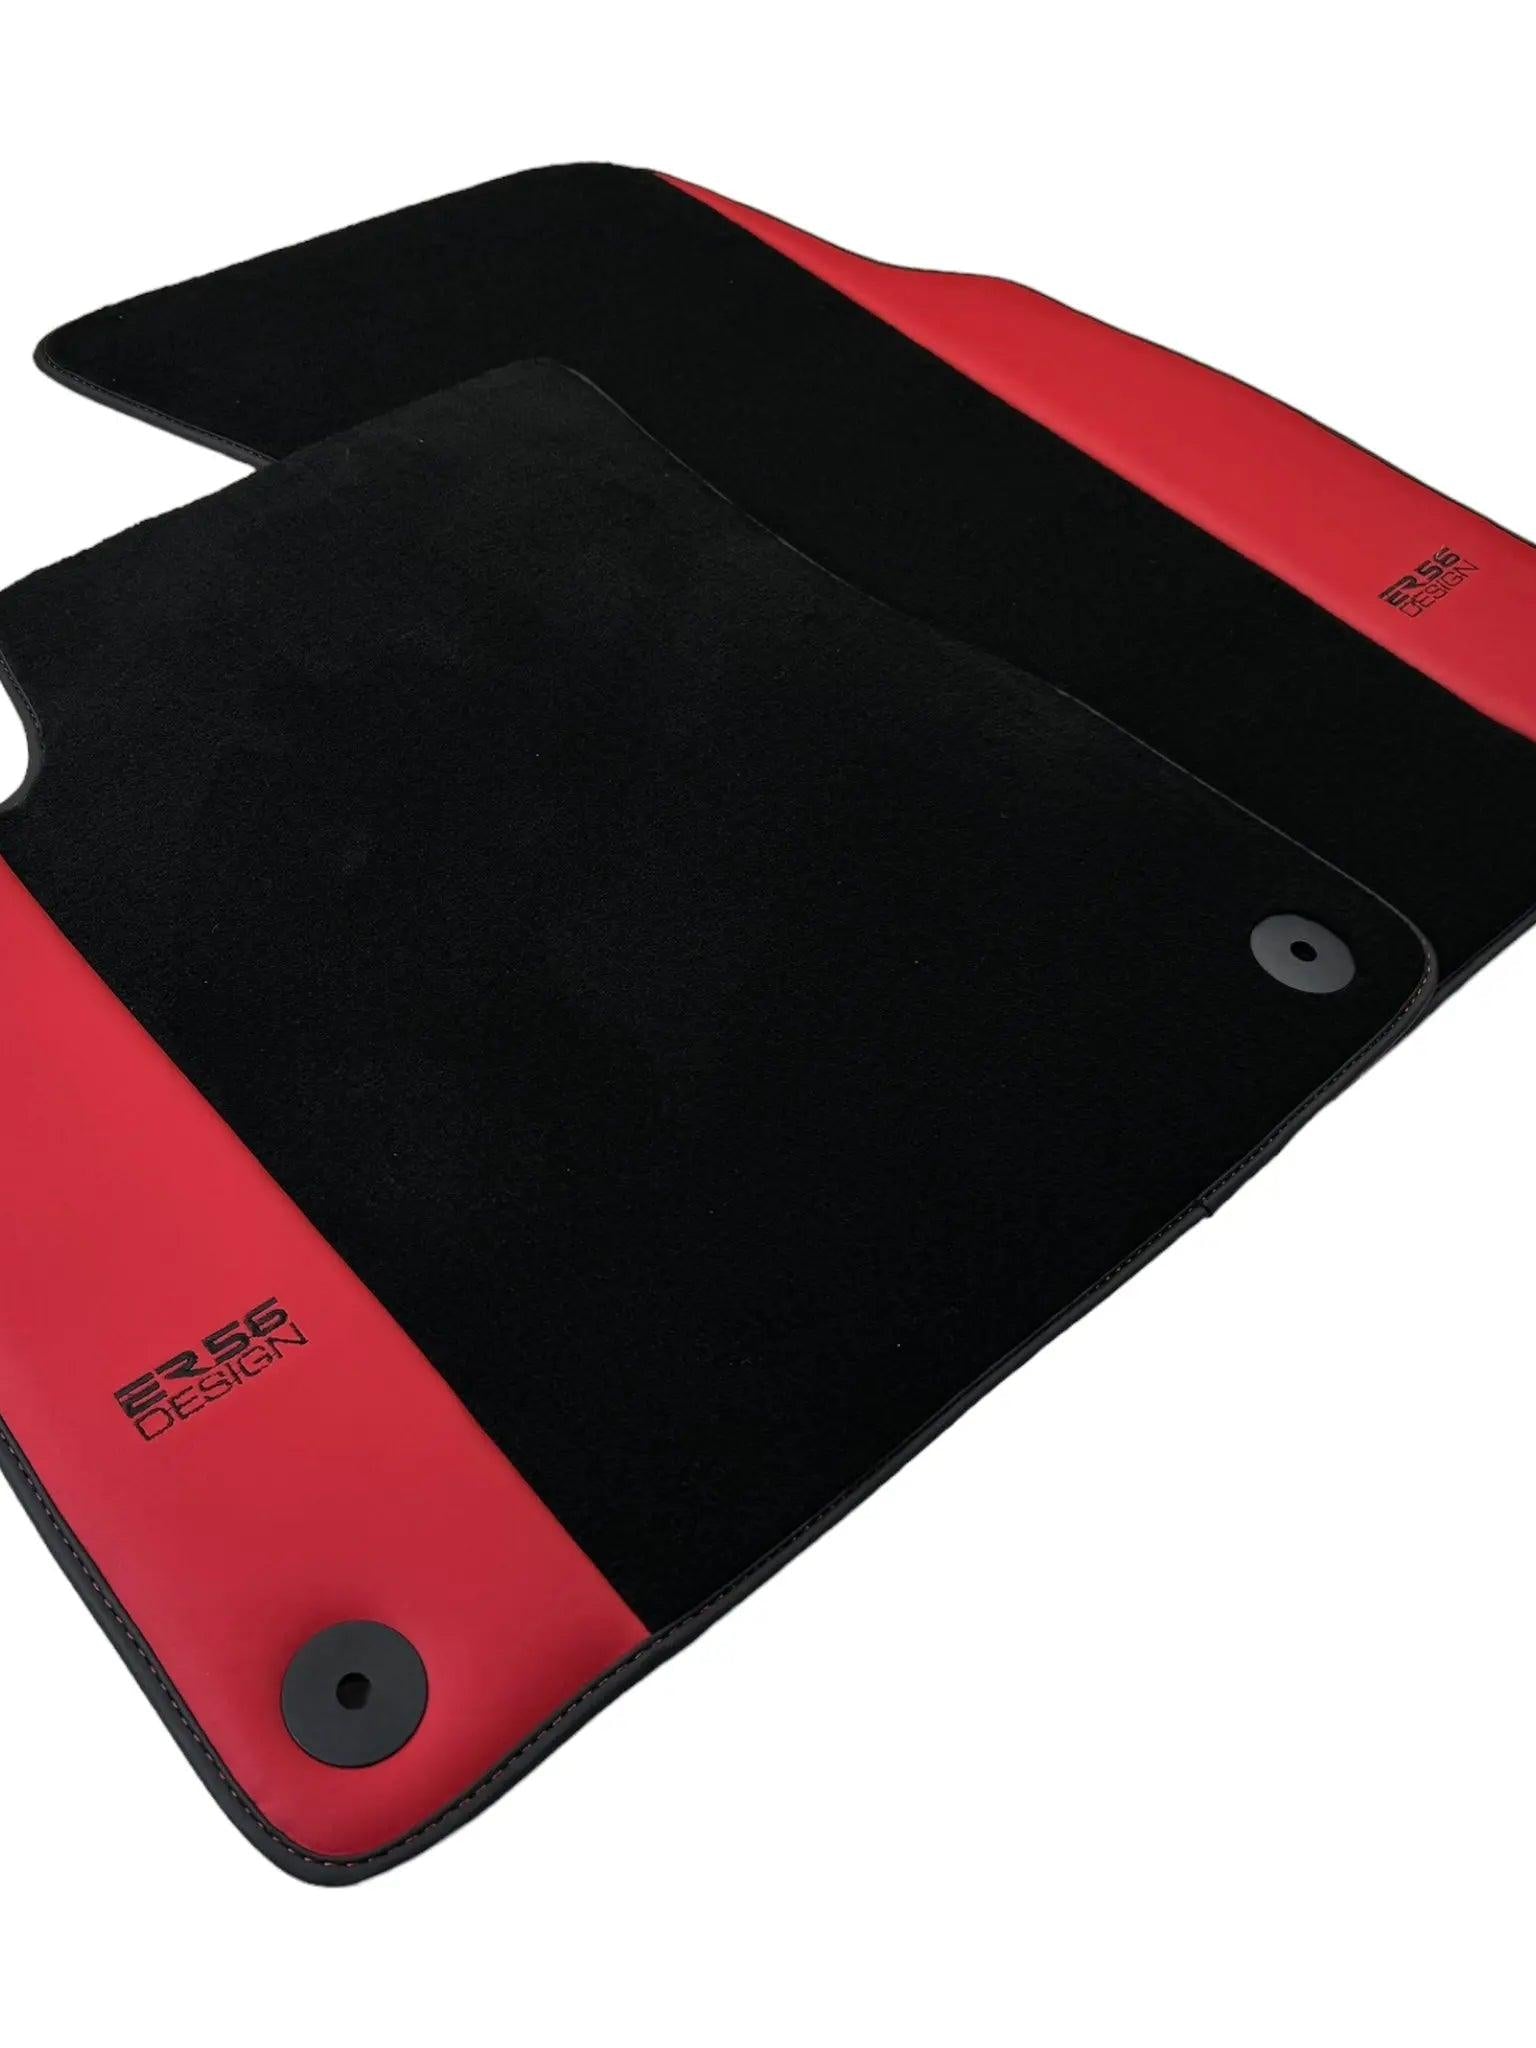 Black Floor Mats for Lamborghini Urus with Red Leather | ER56 Design